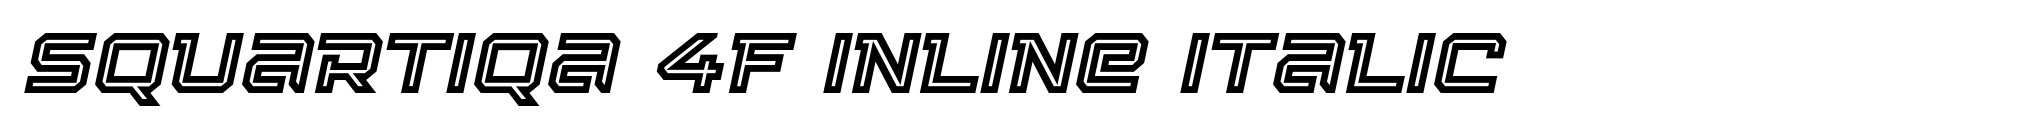 Squartiqa 4F Inline Italic image